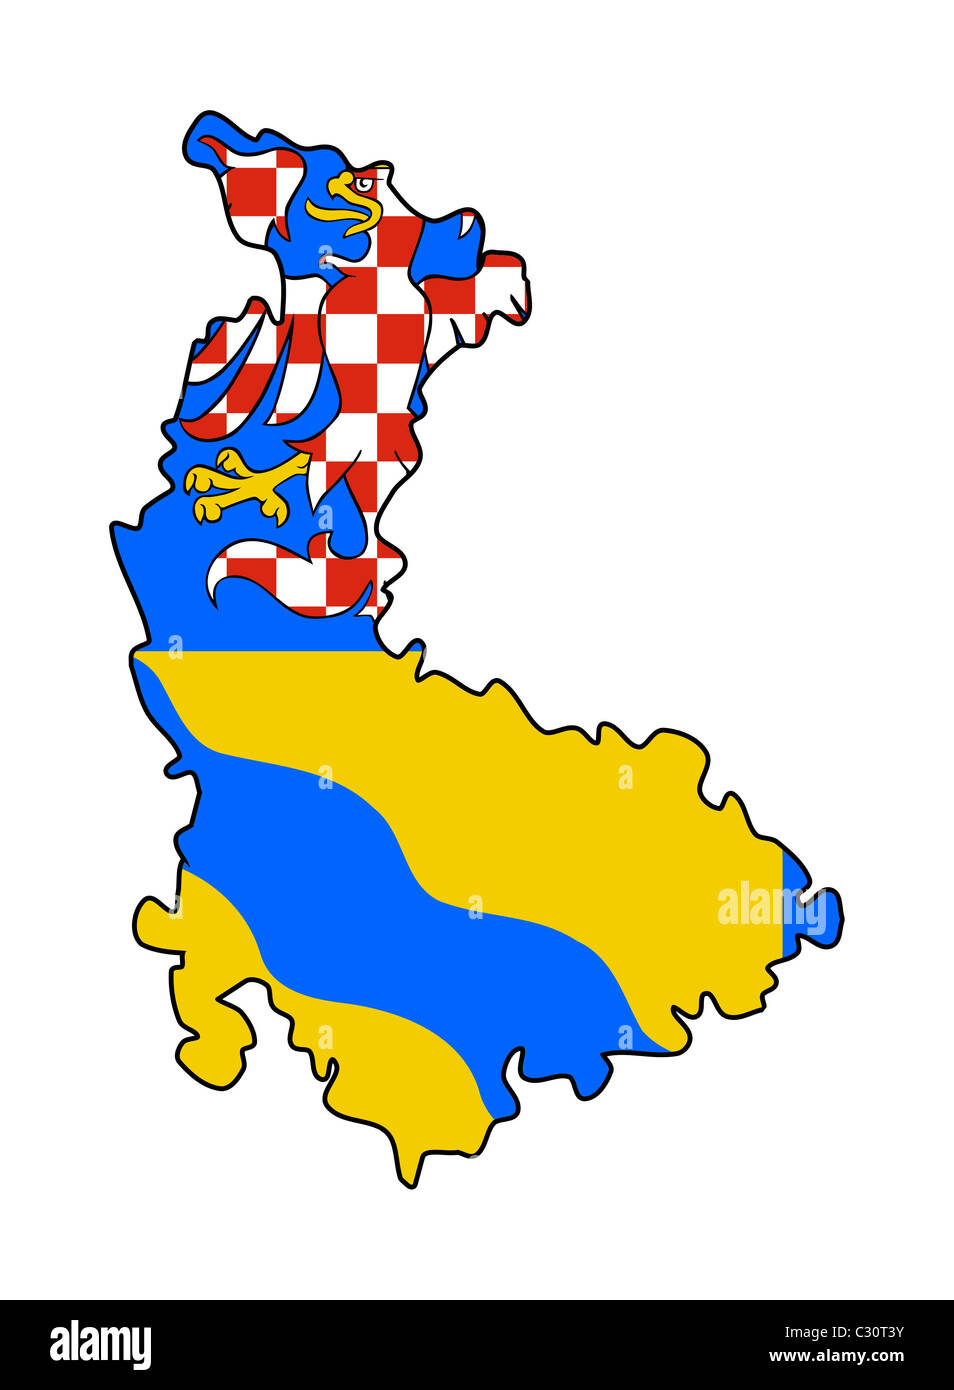 Flagge der Olomouc Region der Tschechischen Republik auf Karte; isoliert auf weißem Hintergrund. Stockfoto